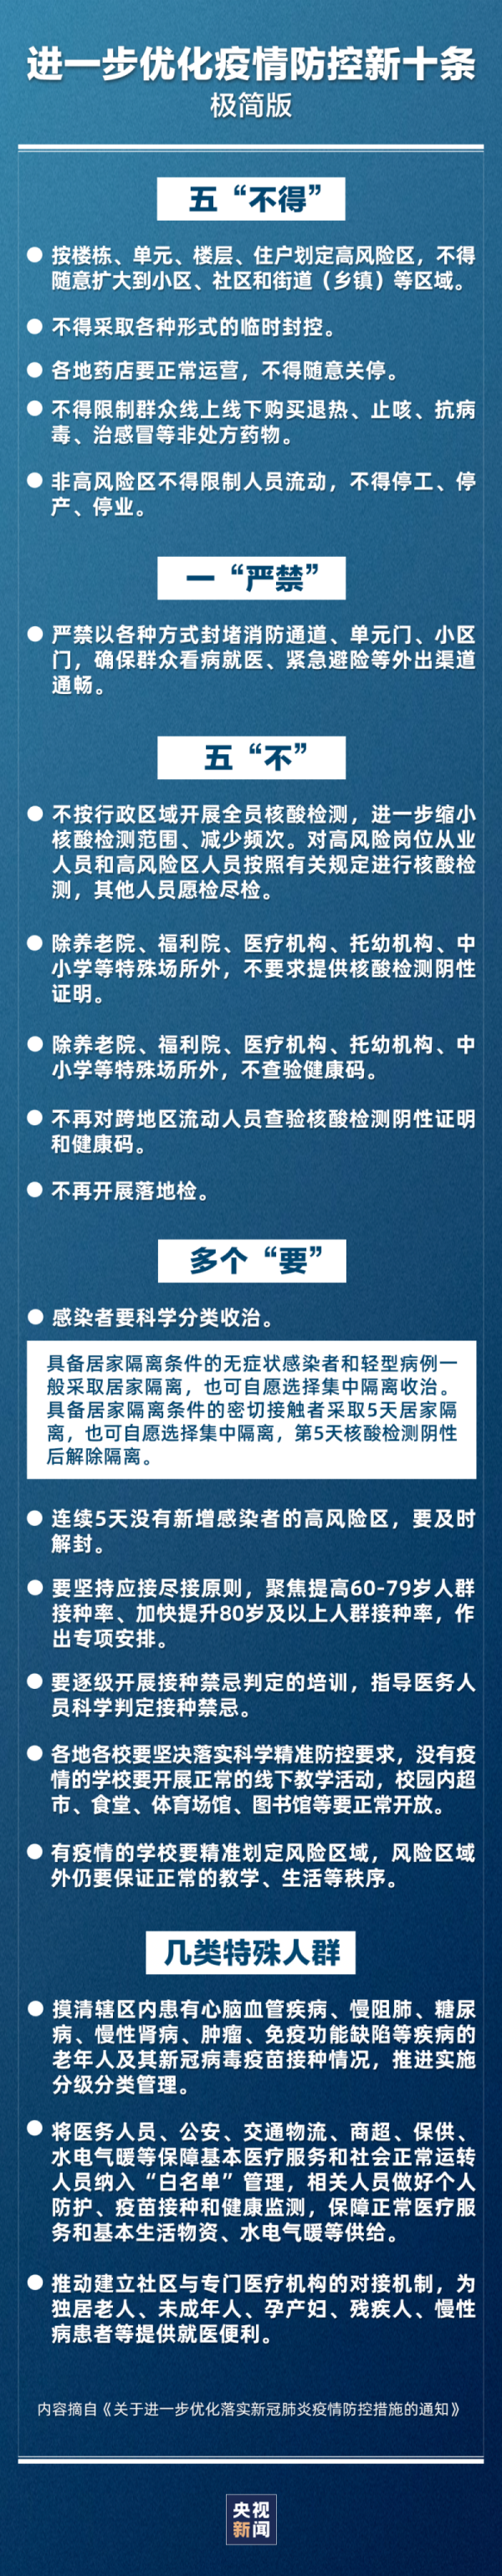 回国入境隔离政策将放宽至“0+3”？香港宜实施“0+0”？别急，看看官方怎么说！